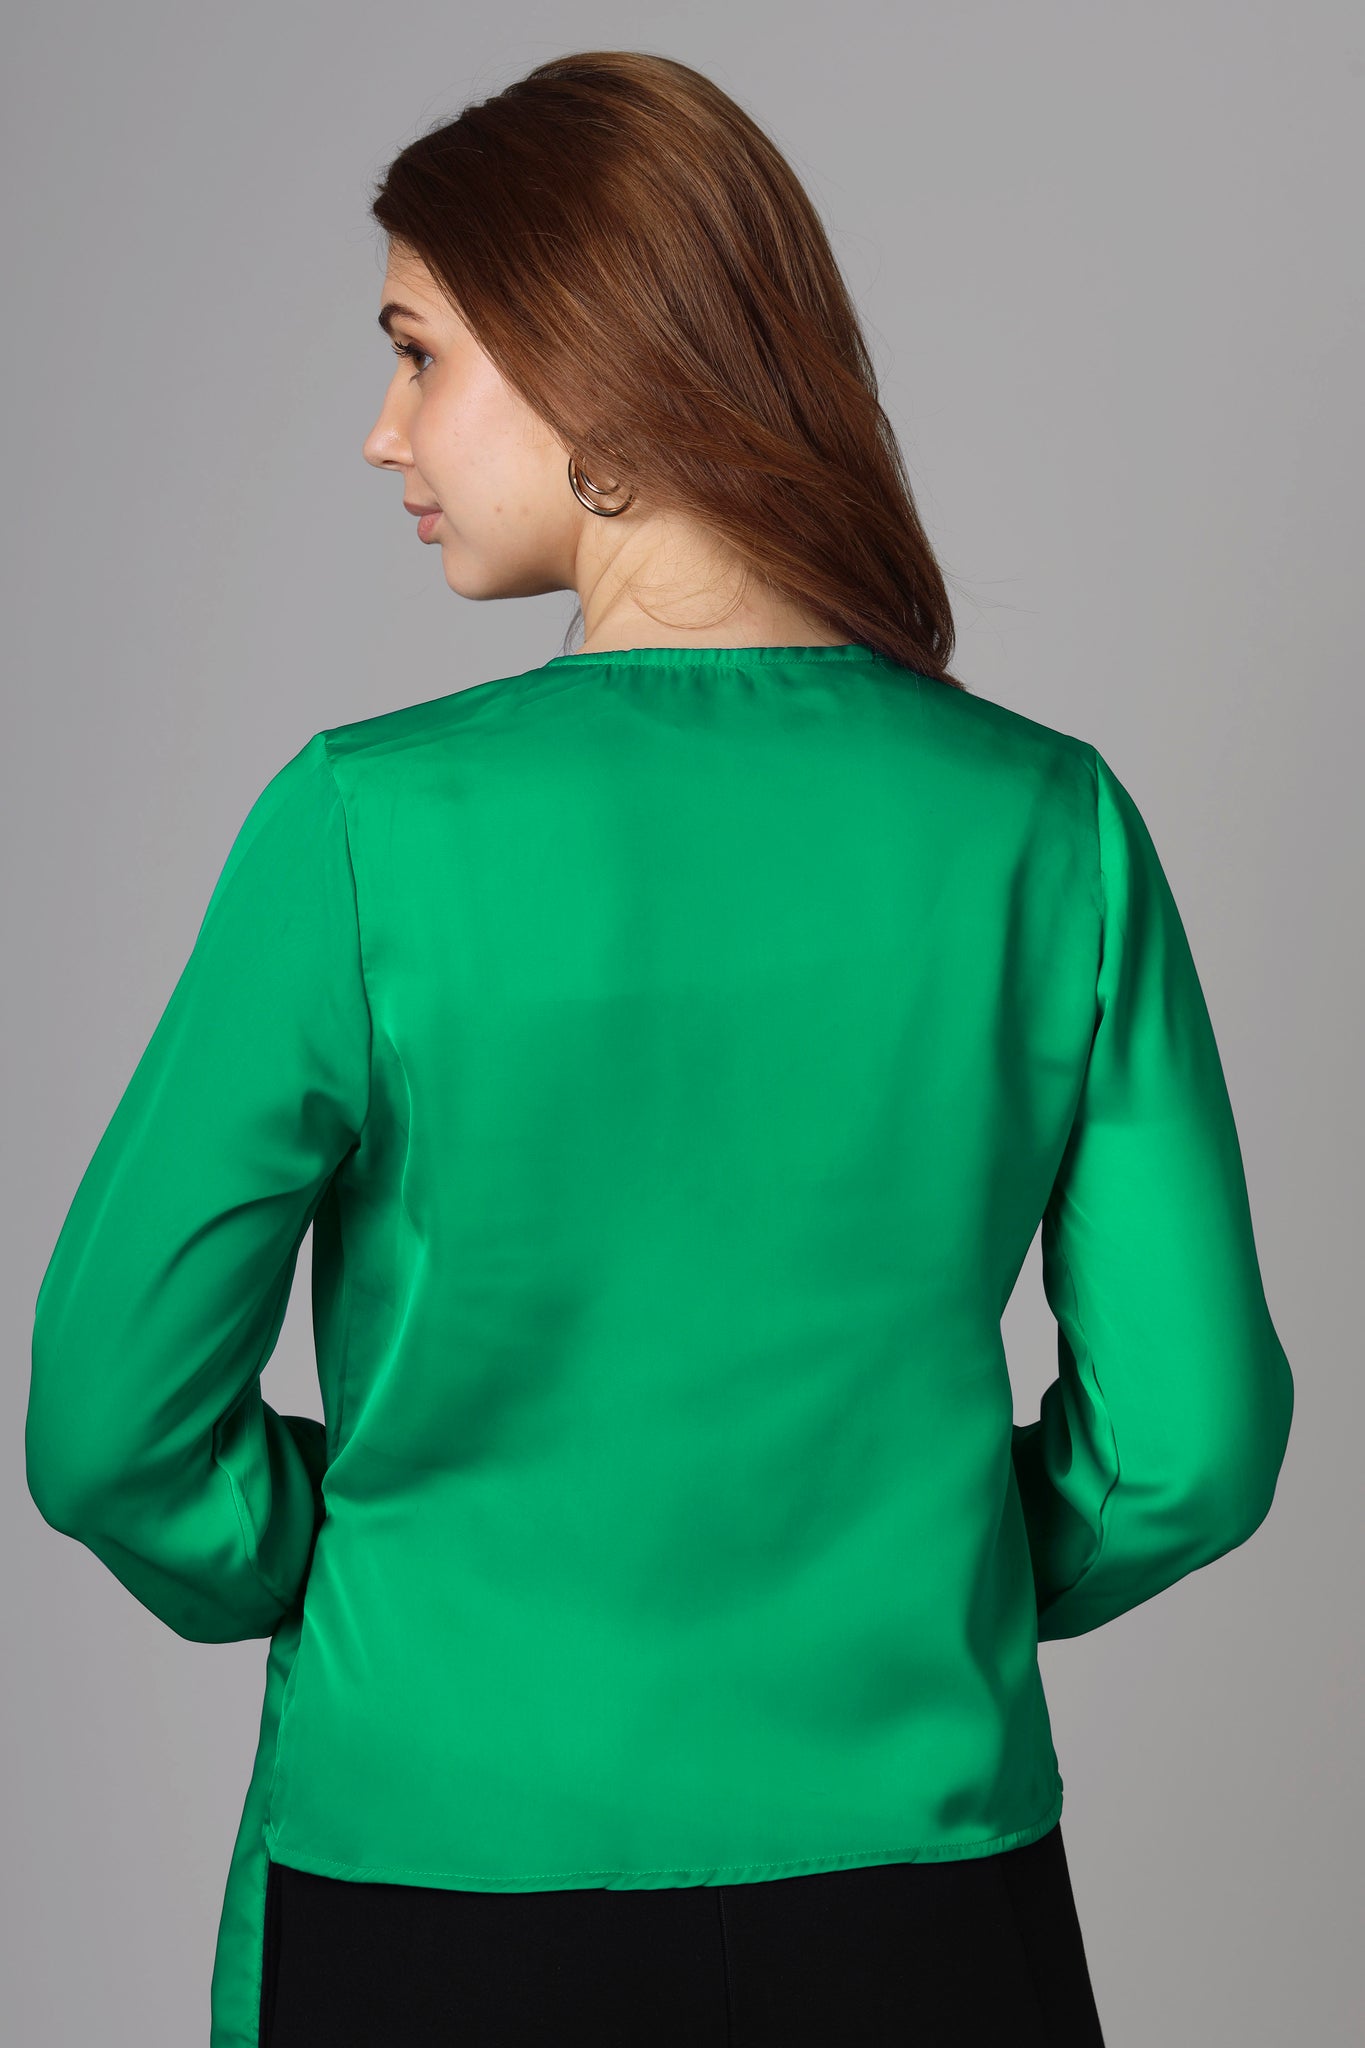 Classic Plain Green Top For Women